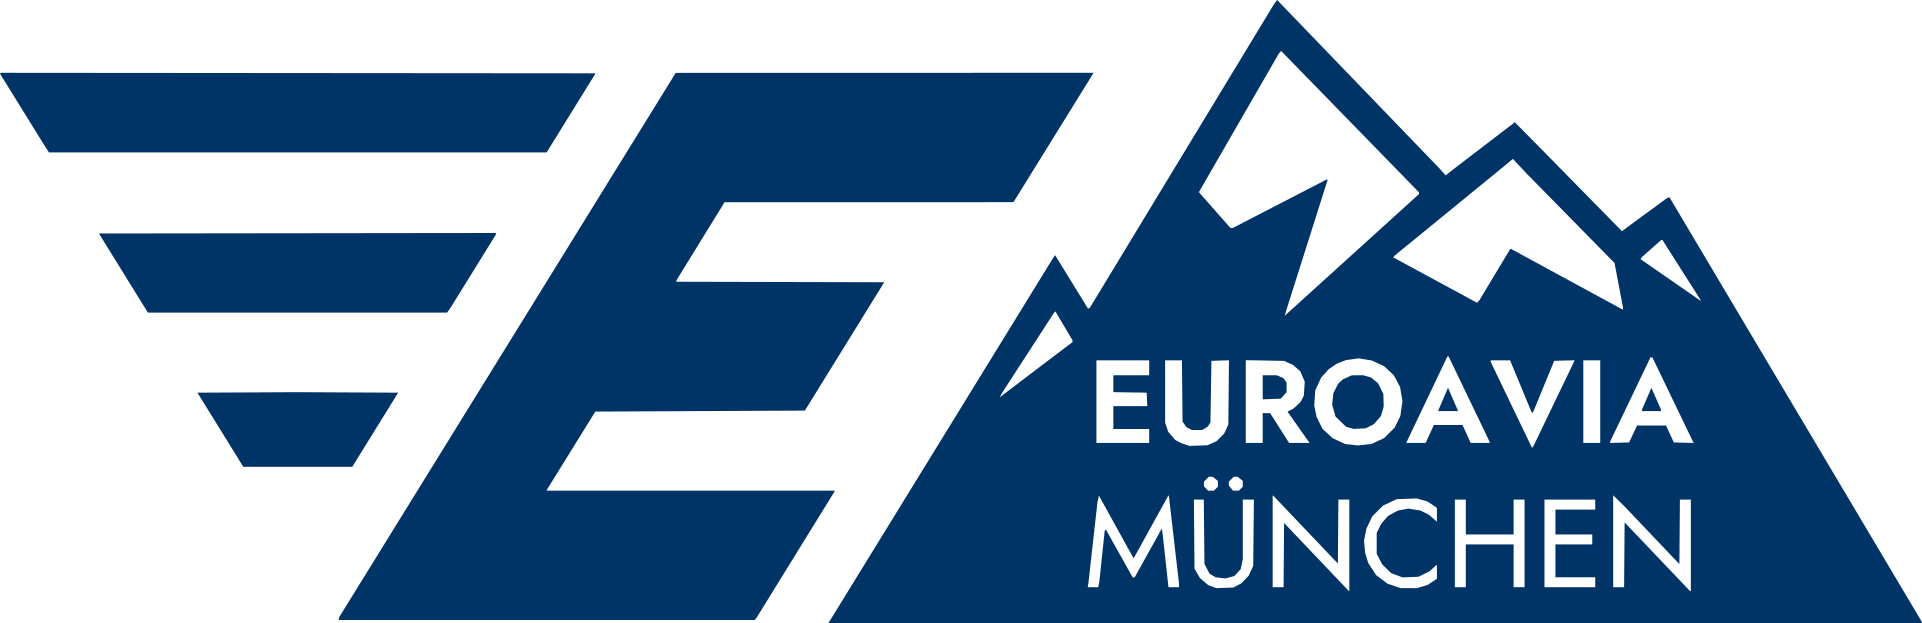 EUROAVIA Munich